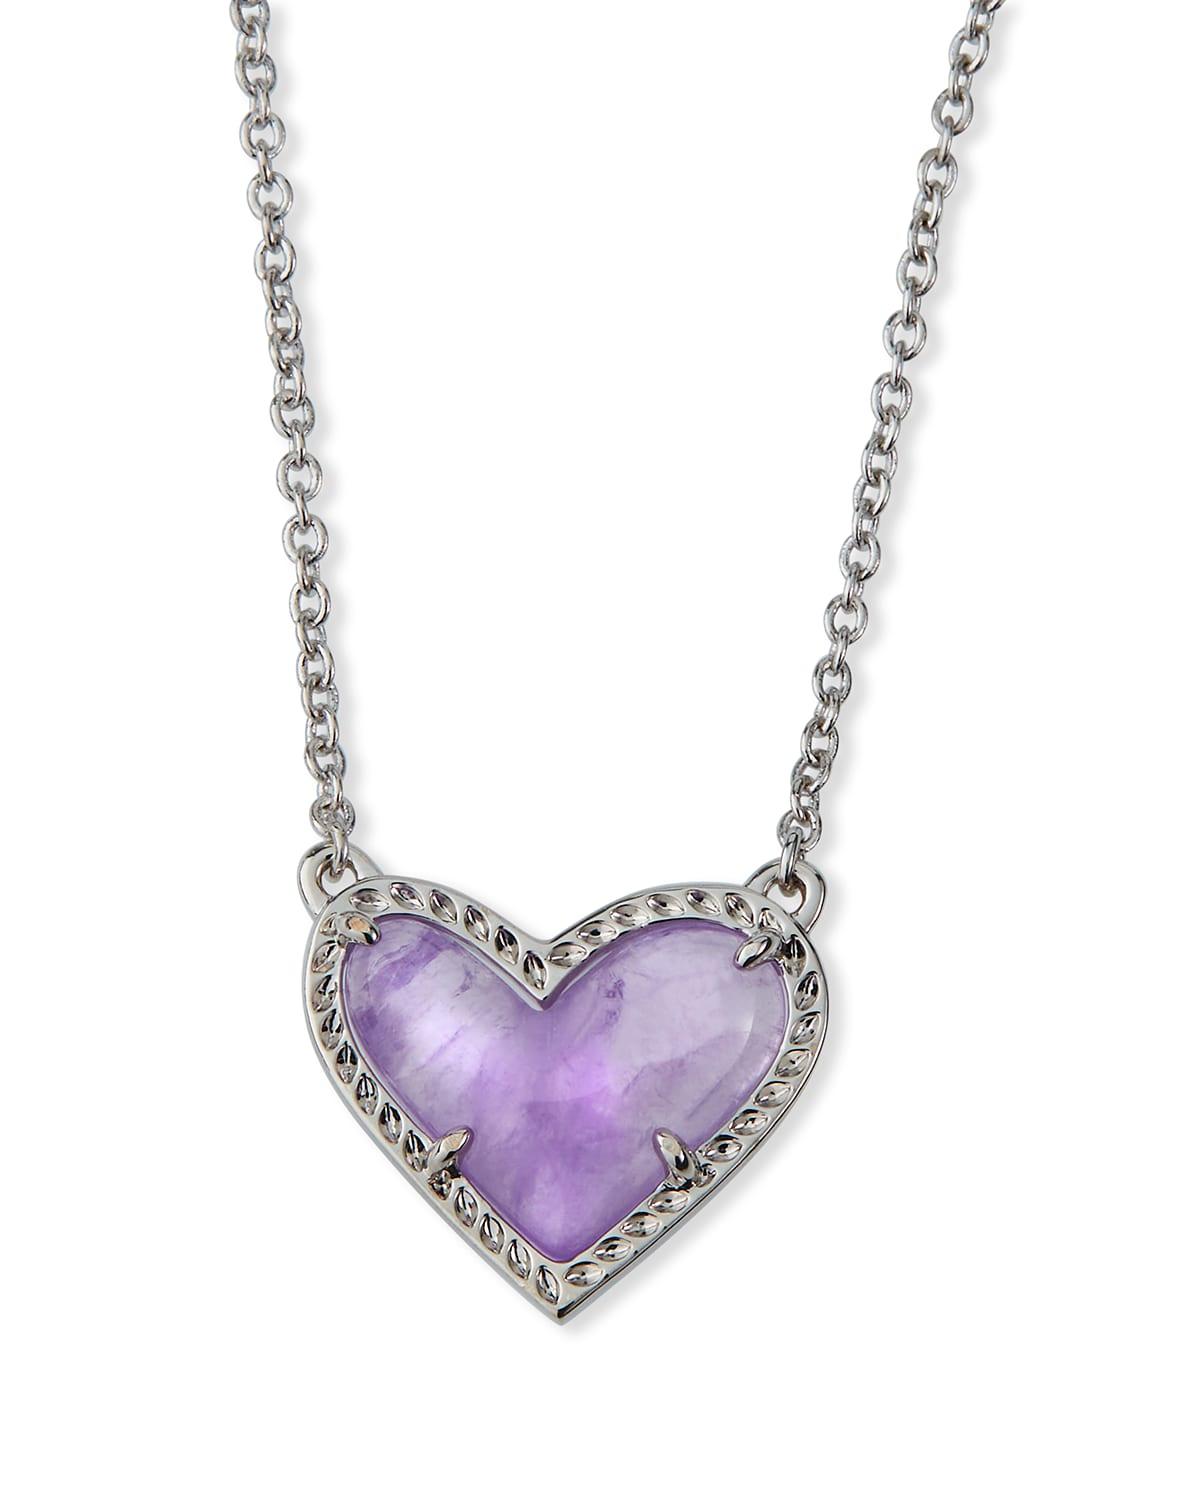 Kendra Scott Ansley Long Heart Pendant Necklace & Earrings Silver Amethyst  | Heart pendant necklace, Silver amethyst, Heart pendant